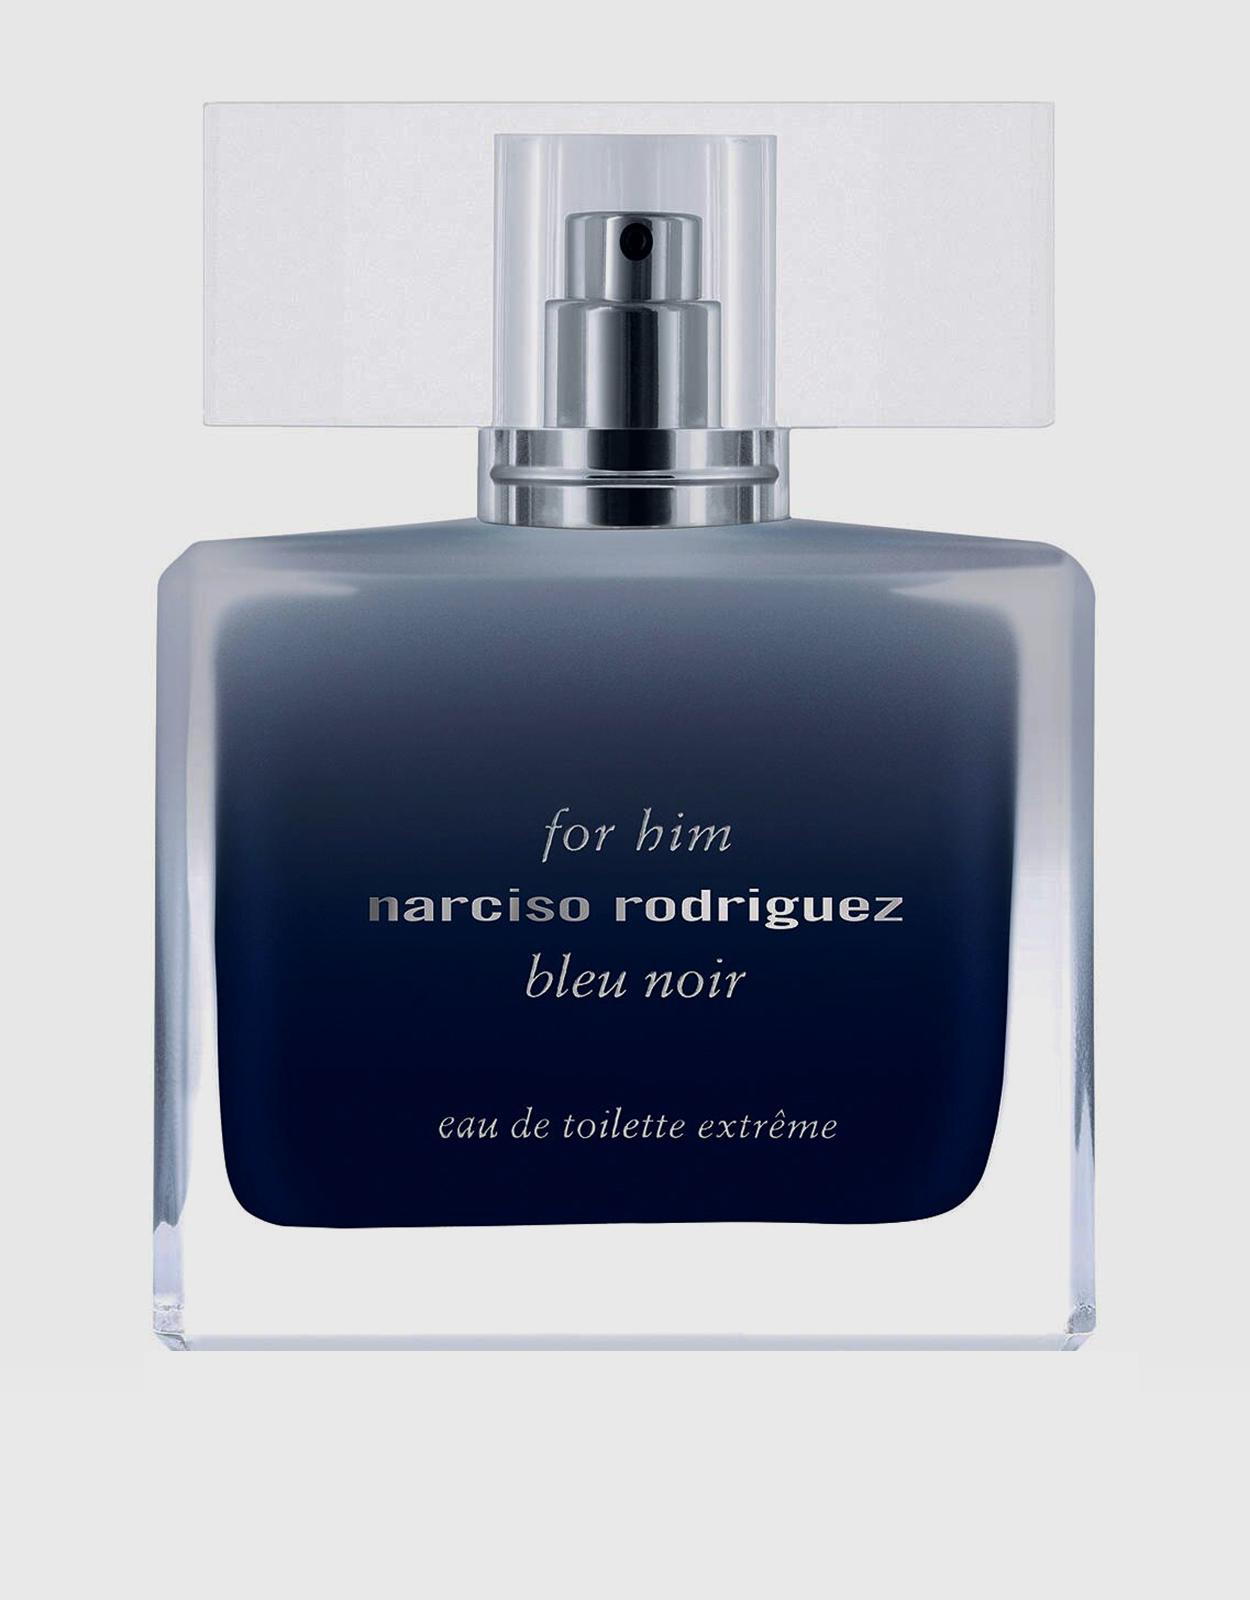 Narciso Rodriguez for Him Bleu Noir Eau de Parfum Narciso Rodriguez cologne  - a fragrance for men 2018